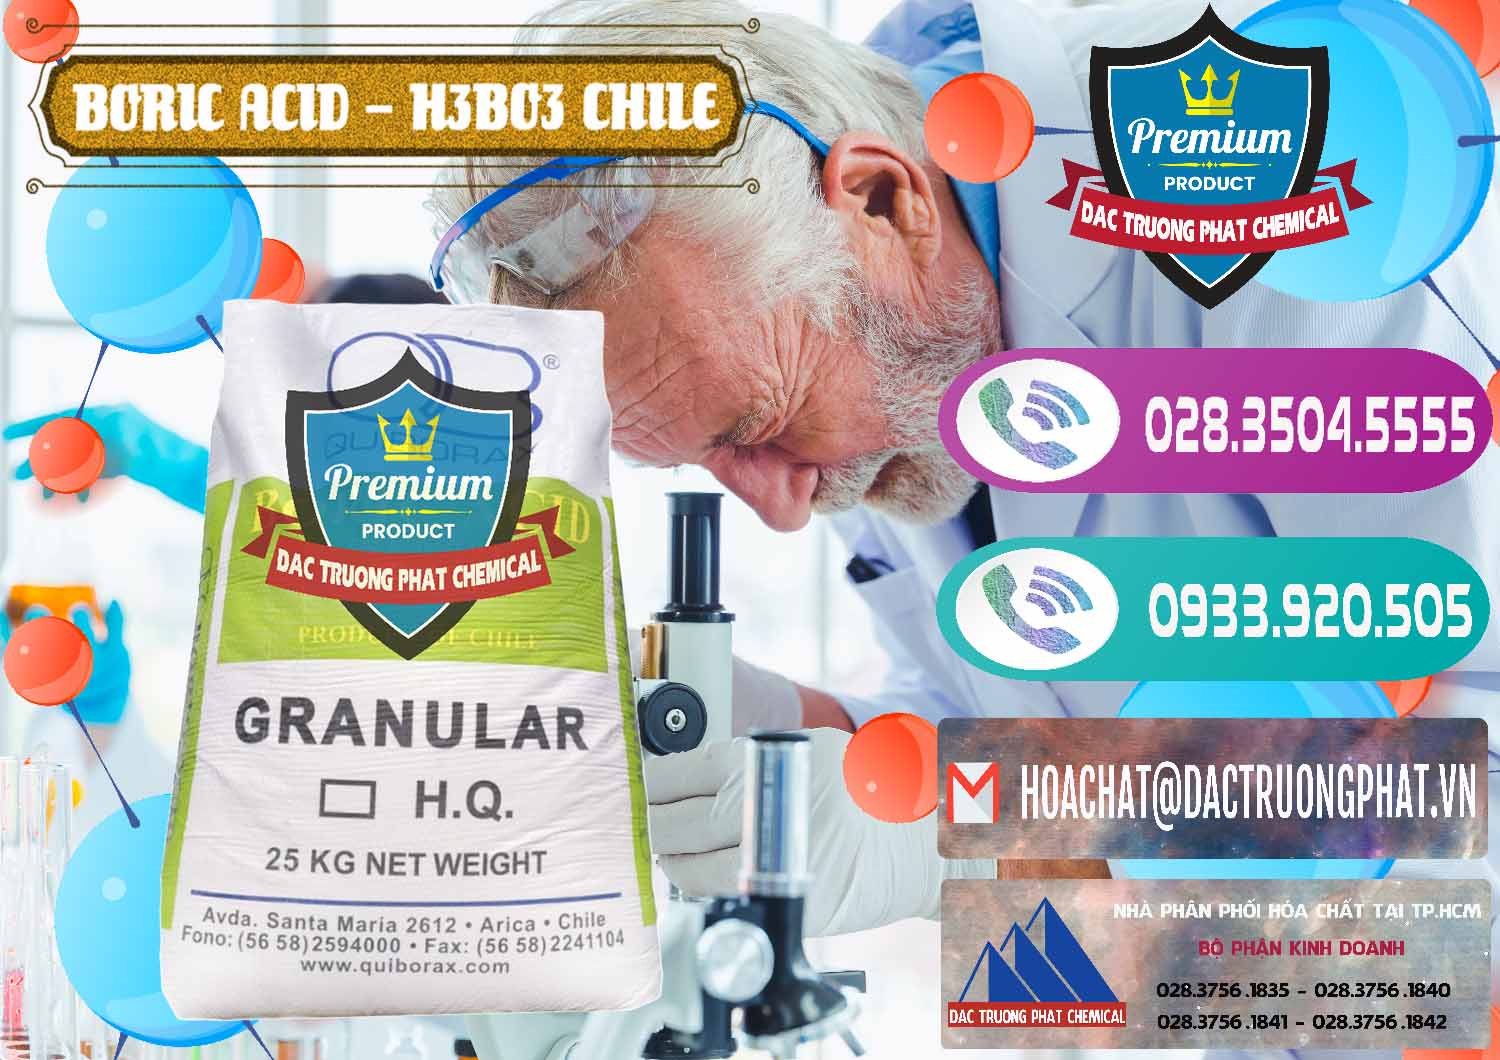 Nơi cung cấp ( bán ) Acid Boric – Axit Boric H3BO3 99% Quiborax Chile - 0281 - Công ty chuyên cung cấp và kinh doanh hóa chất tại TP.HCM - hoachatxulynuoc.com